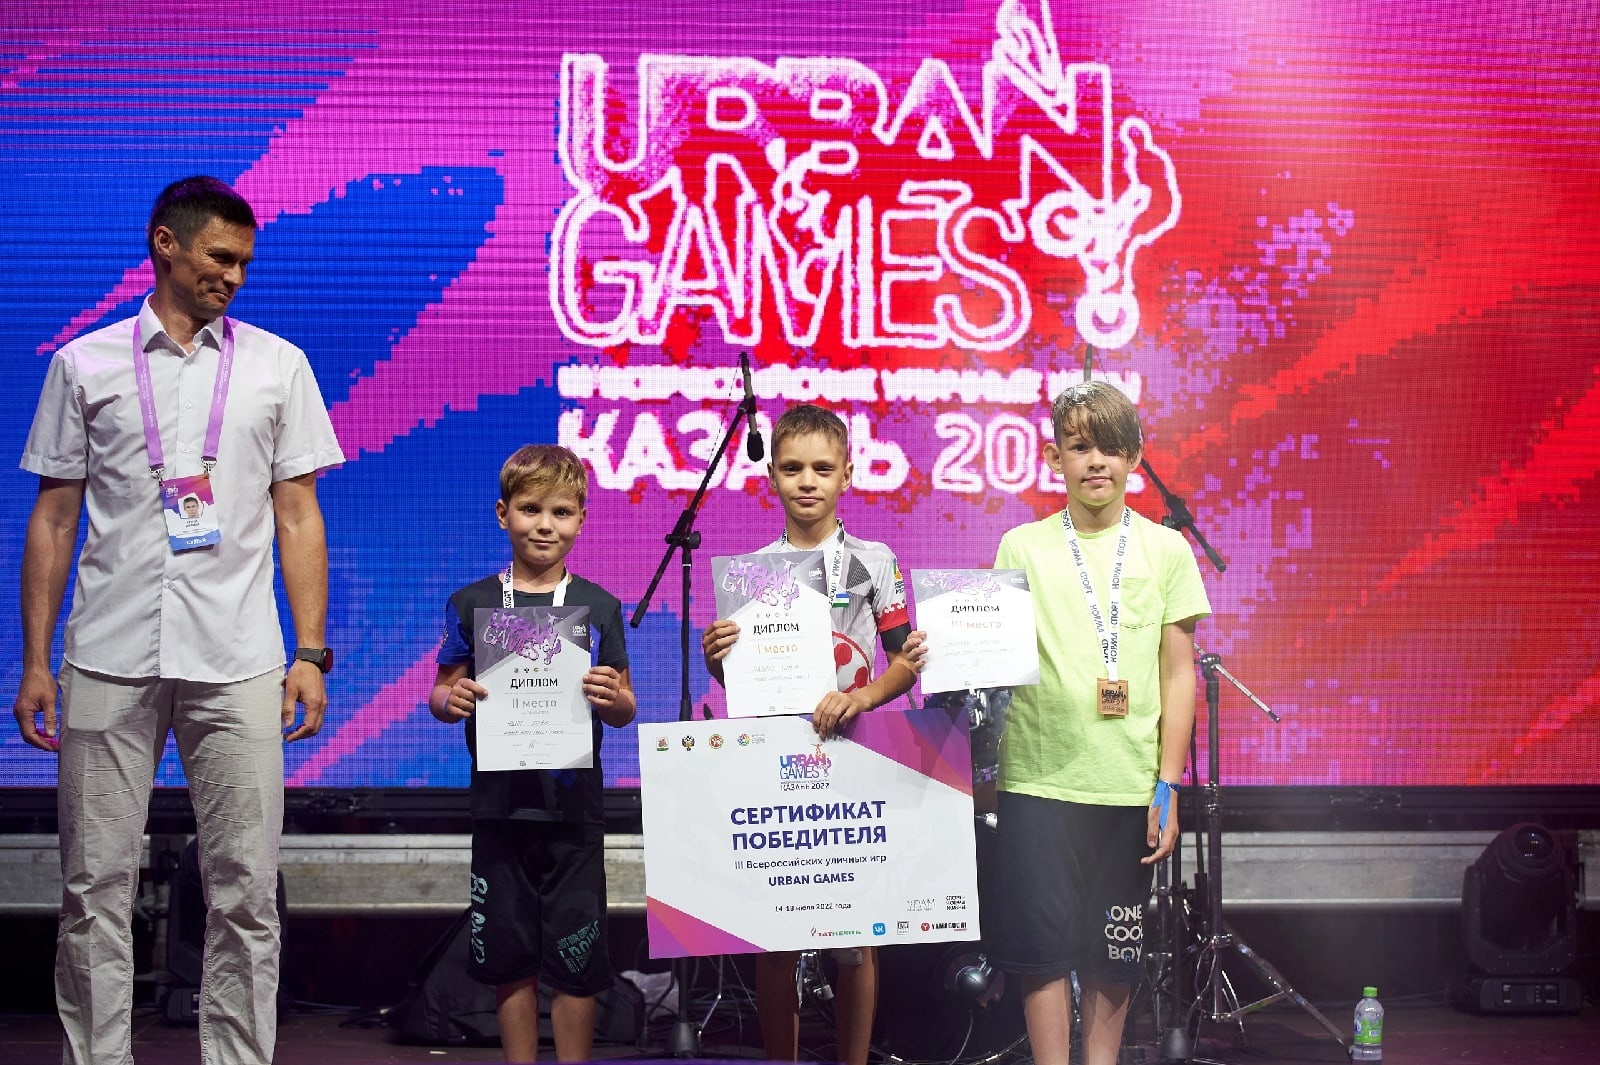 Завершились третьи Всероссийские уличные игры Urban Games, проходили в Казани 16-17 июля 2022